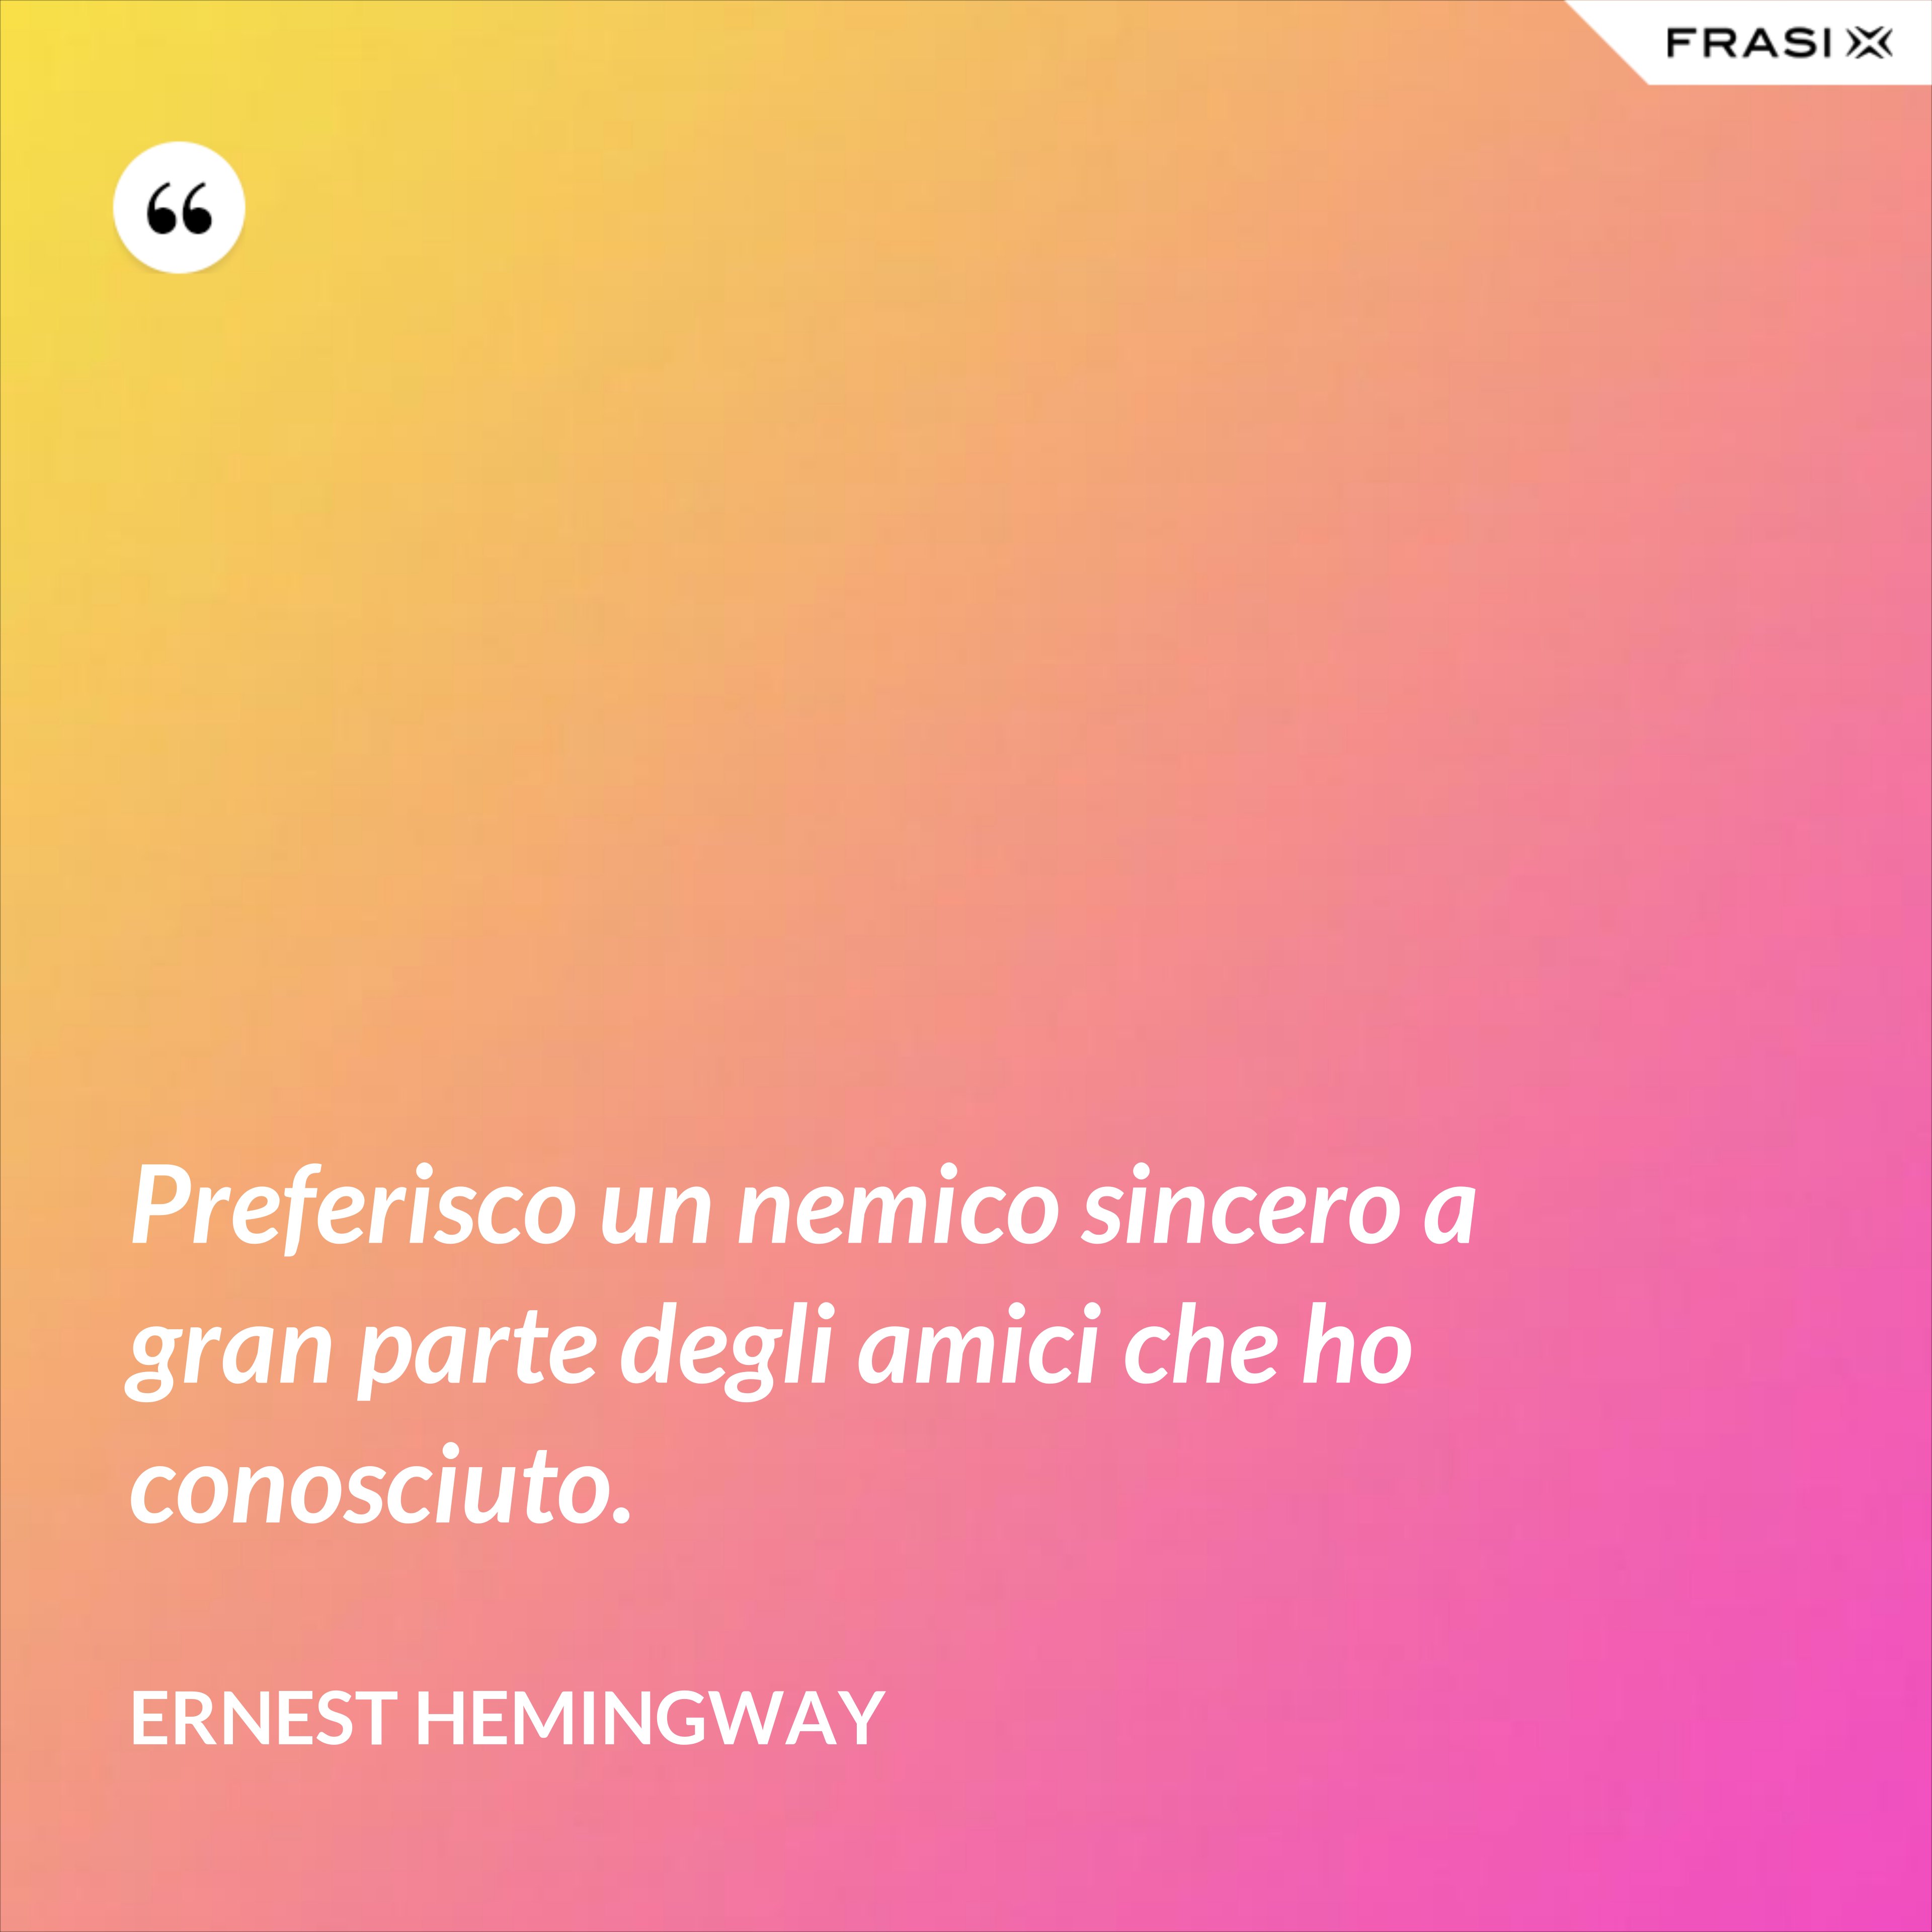 Preferisco un nemico sincero a gran parte degli amici che ho conosciuto. - Ernest Hemingway